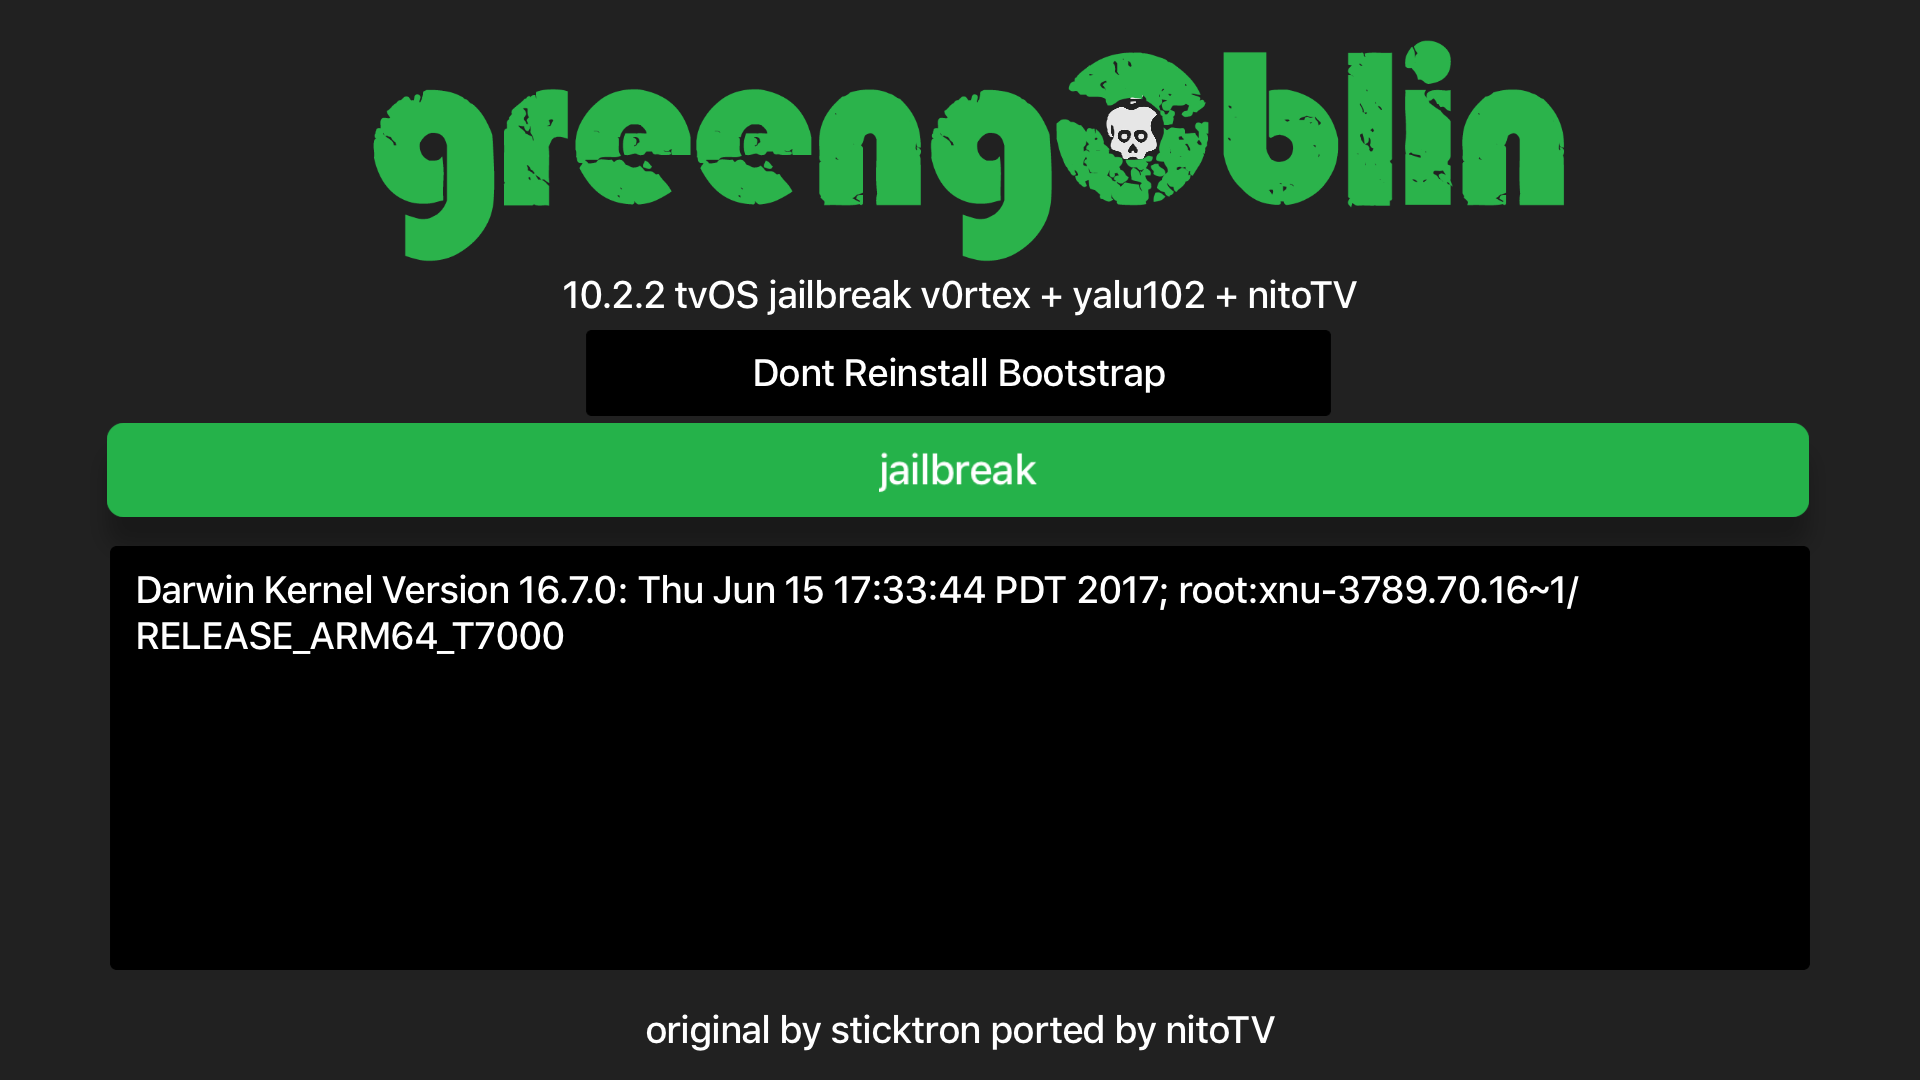 Jailbreak Apple TV with greeng0blin